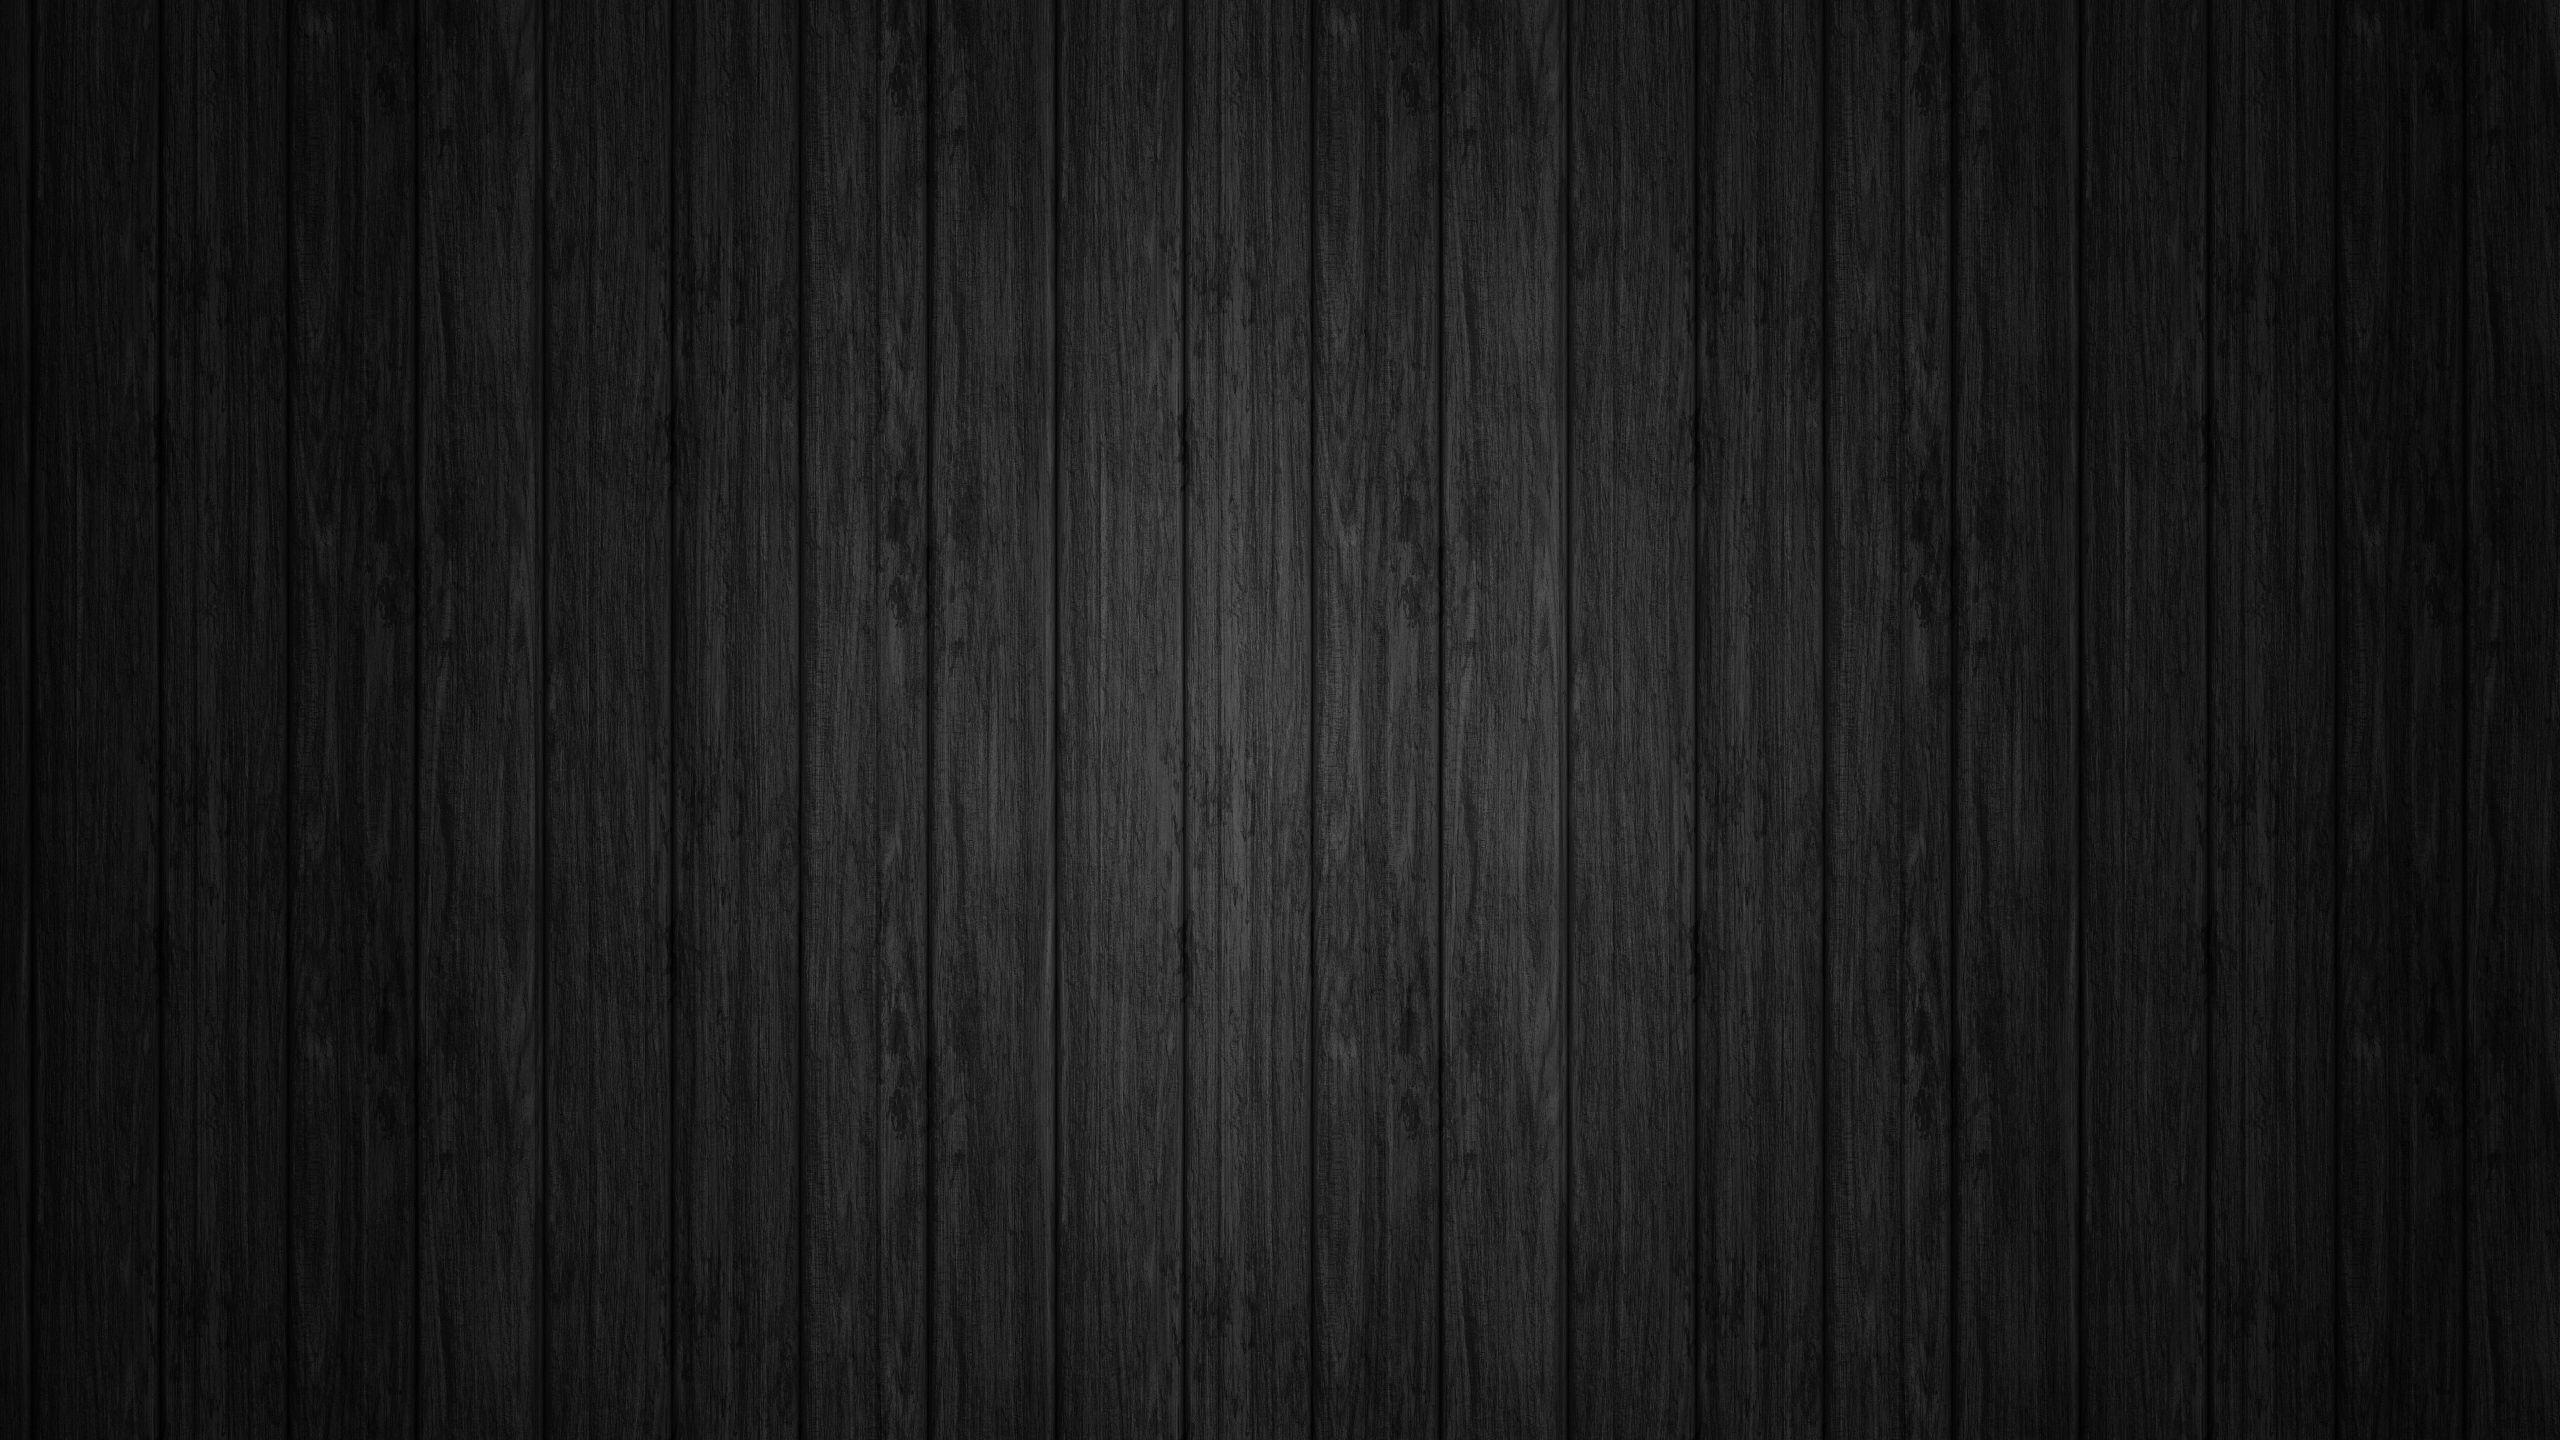 Tuyển chọn 444+ Black wood background 1920x1080 Đẹp nhất, tải miễn phí